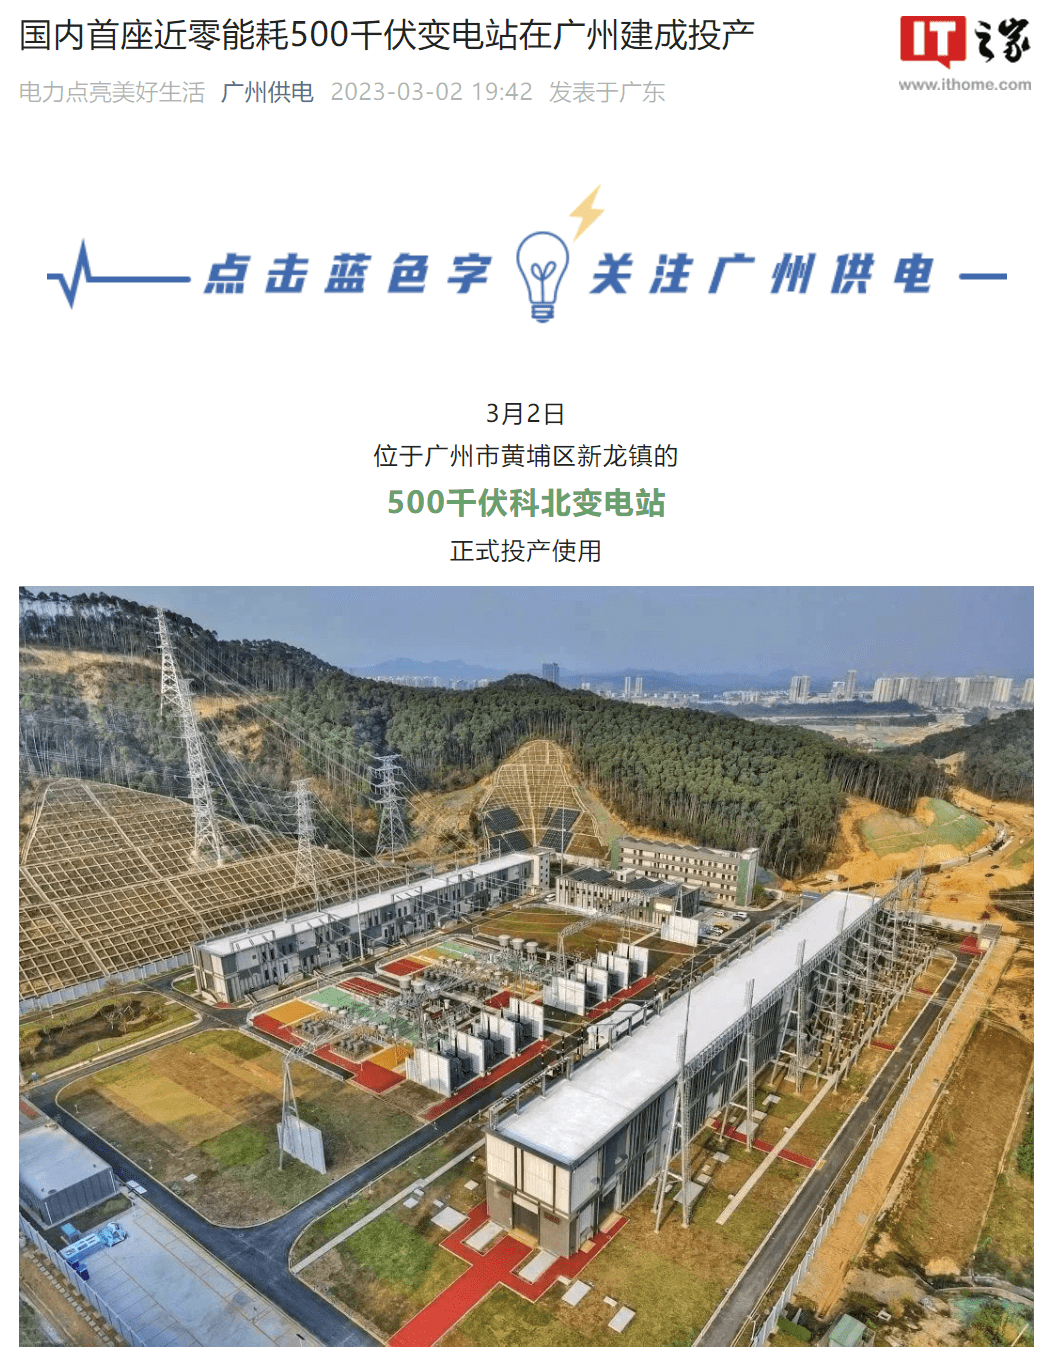 全国首座“近零能耗”500千伏变电站在广州建成 将于3月2日正式投产使用